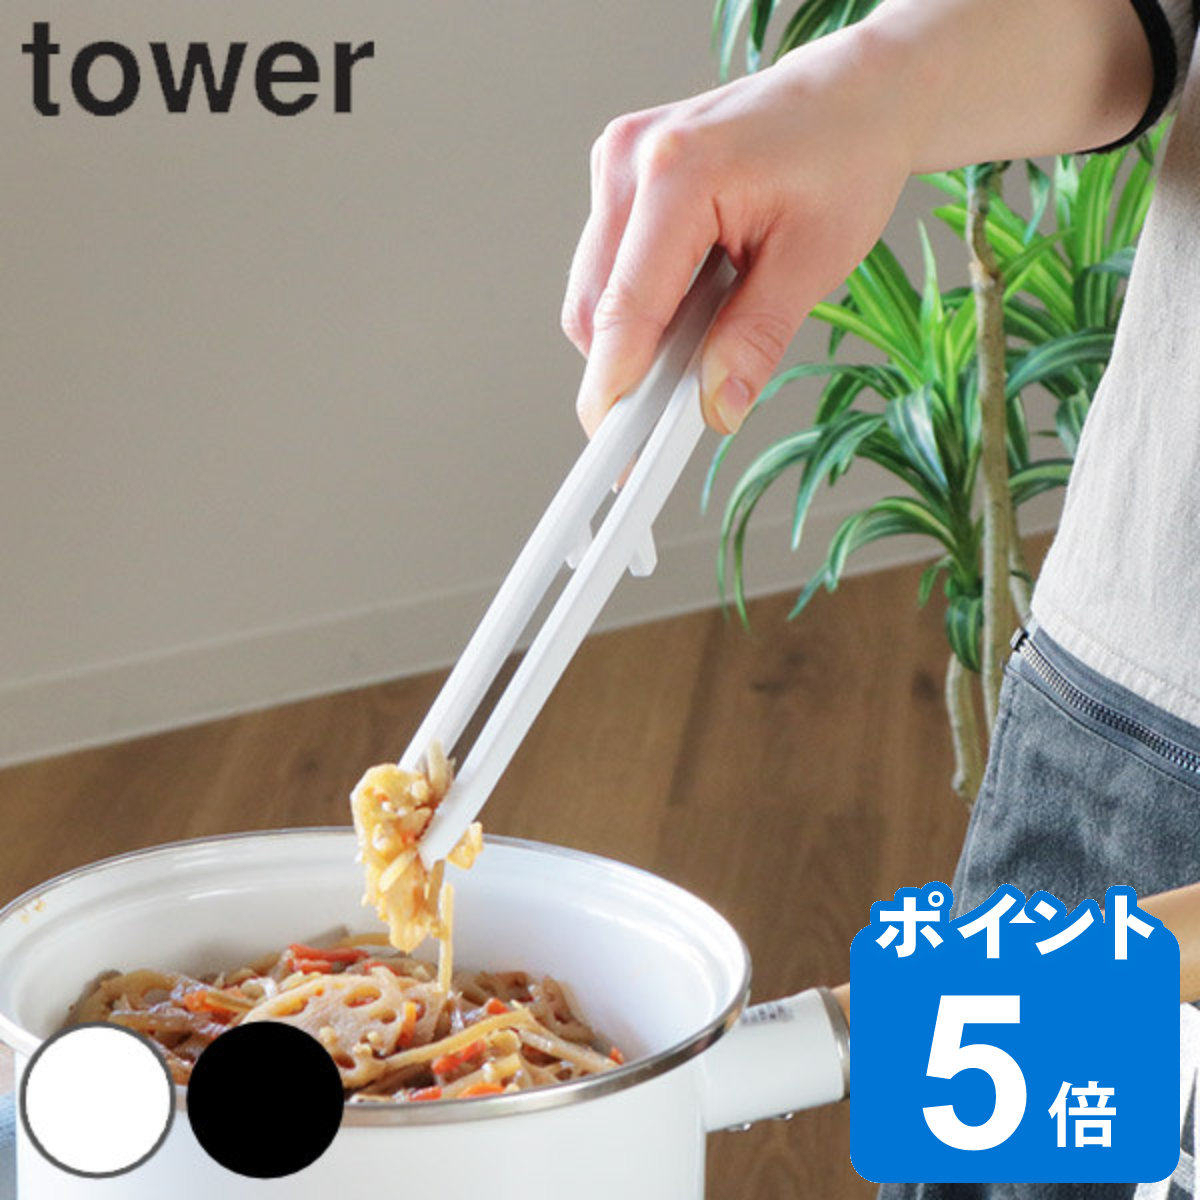 tower 菜箸 トング シリコーン菜箸トング タワー 山崎実業 シリコン製 食洗機対応